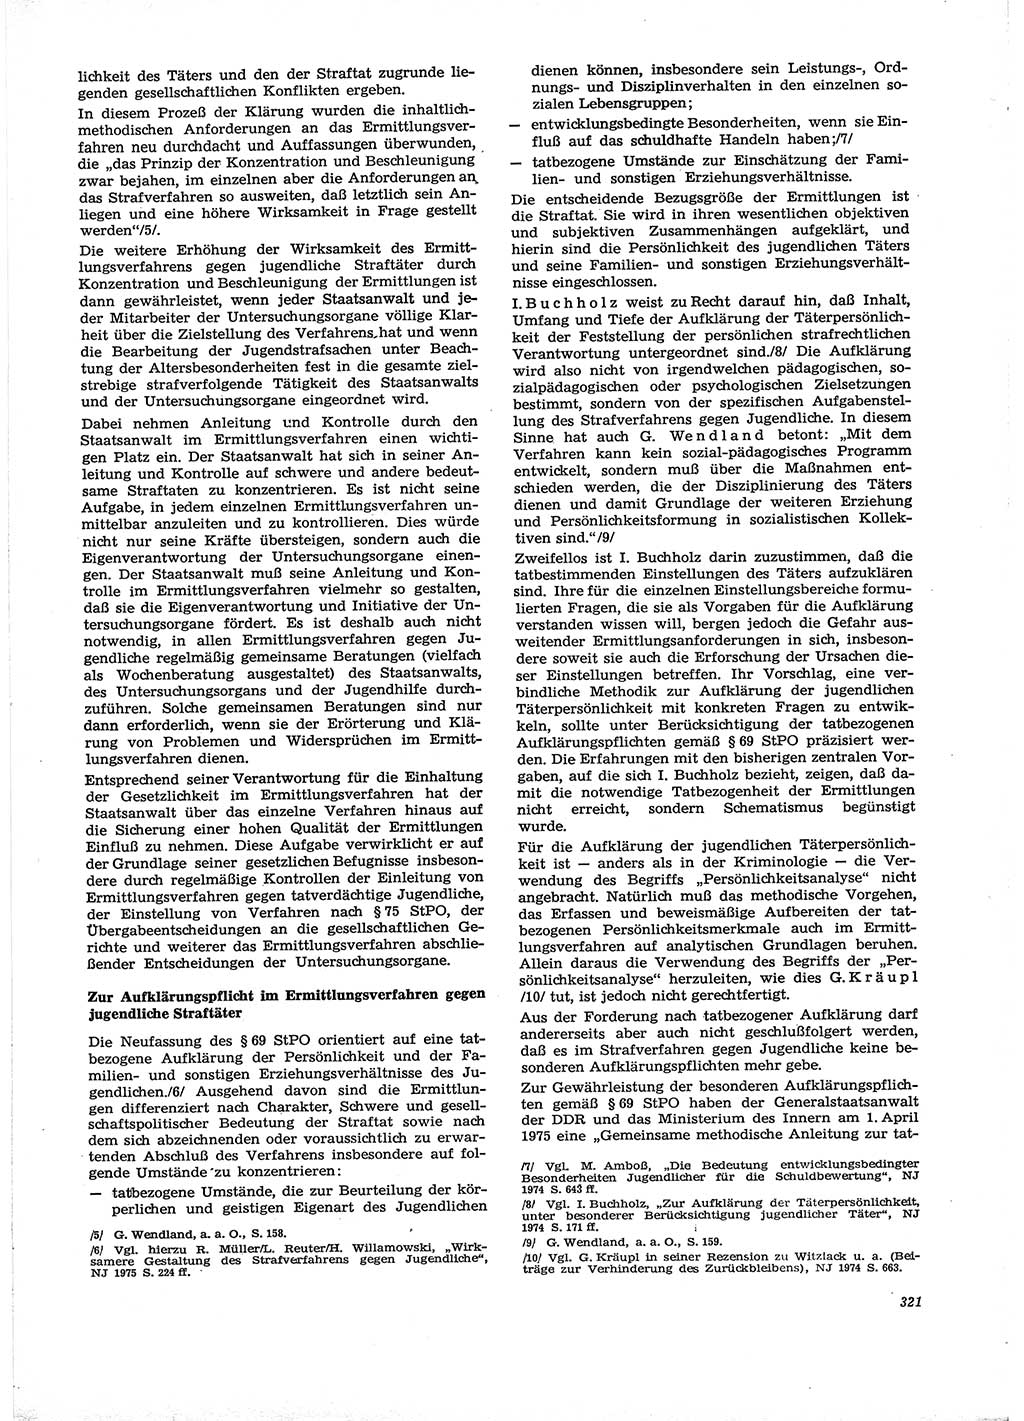 Neue Justiz (NJ), Zeitschrift für Recht und Rechtswissenschaft [Deutsche Demokratische Republik (DDR)], 29. Jahrgang 1975, Seite 321 (NJ DDR 1975, S. 321)